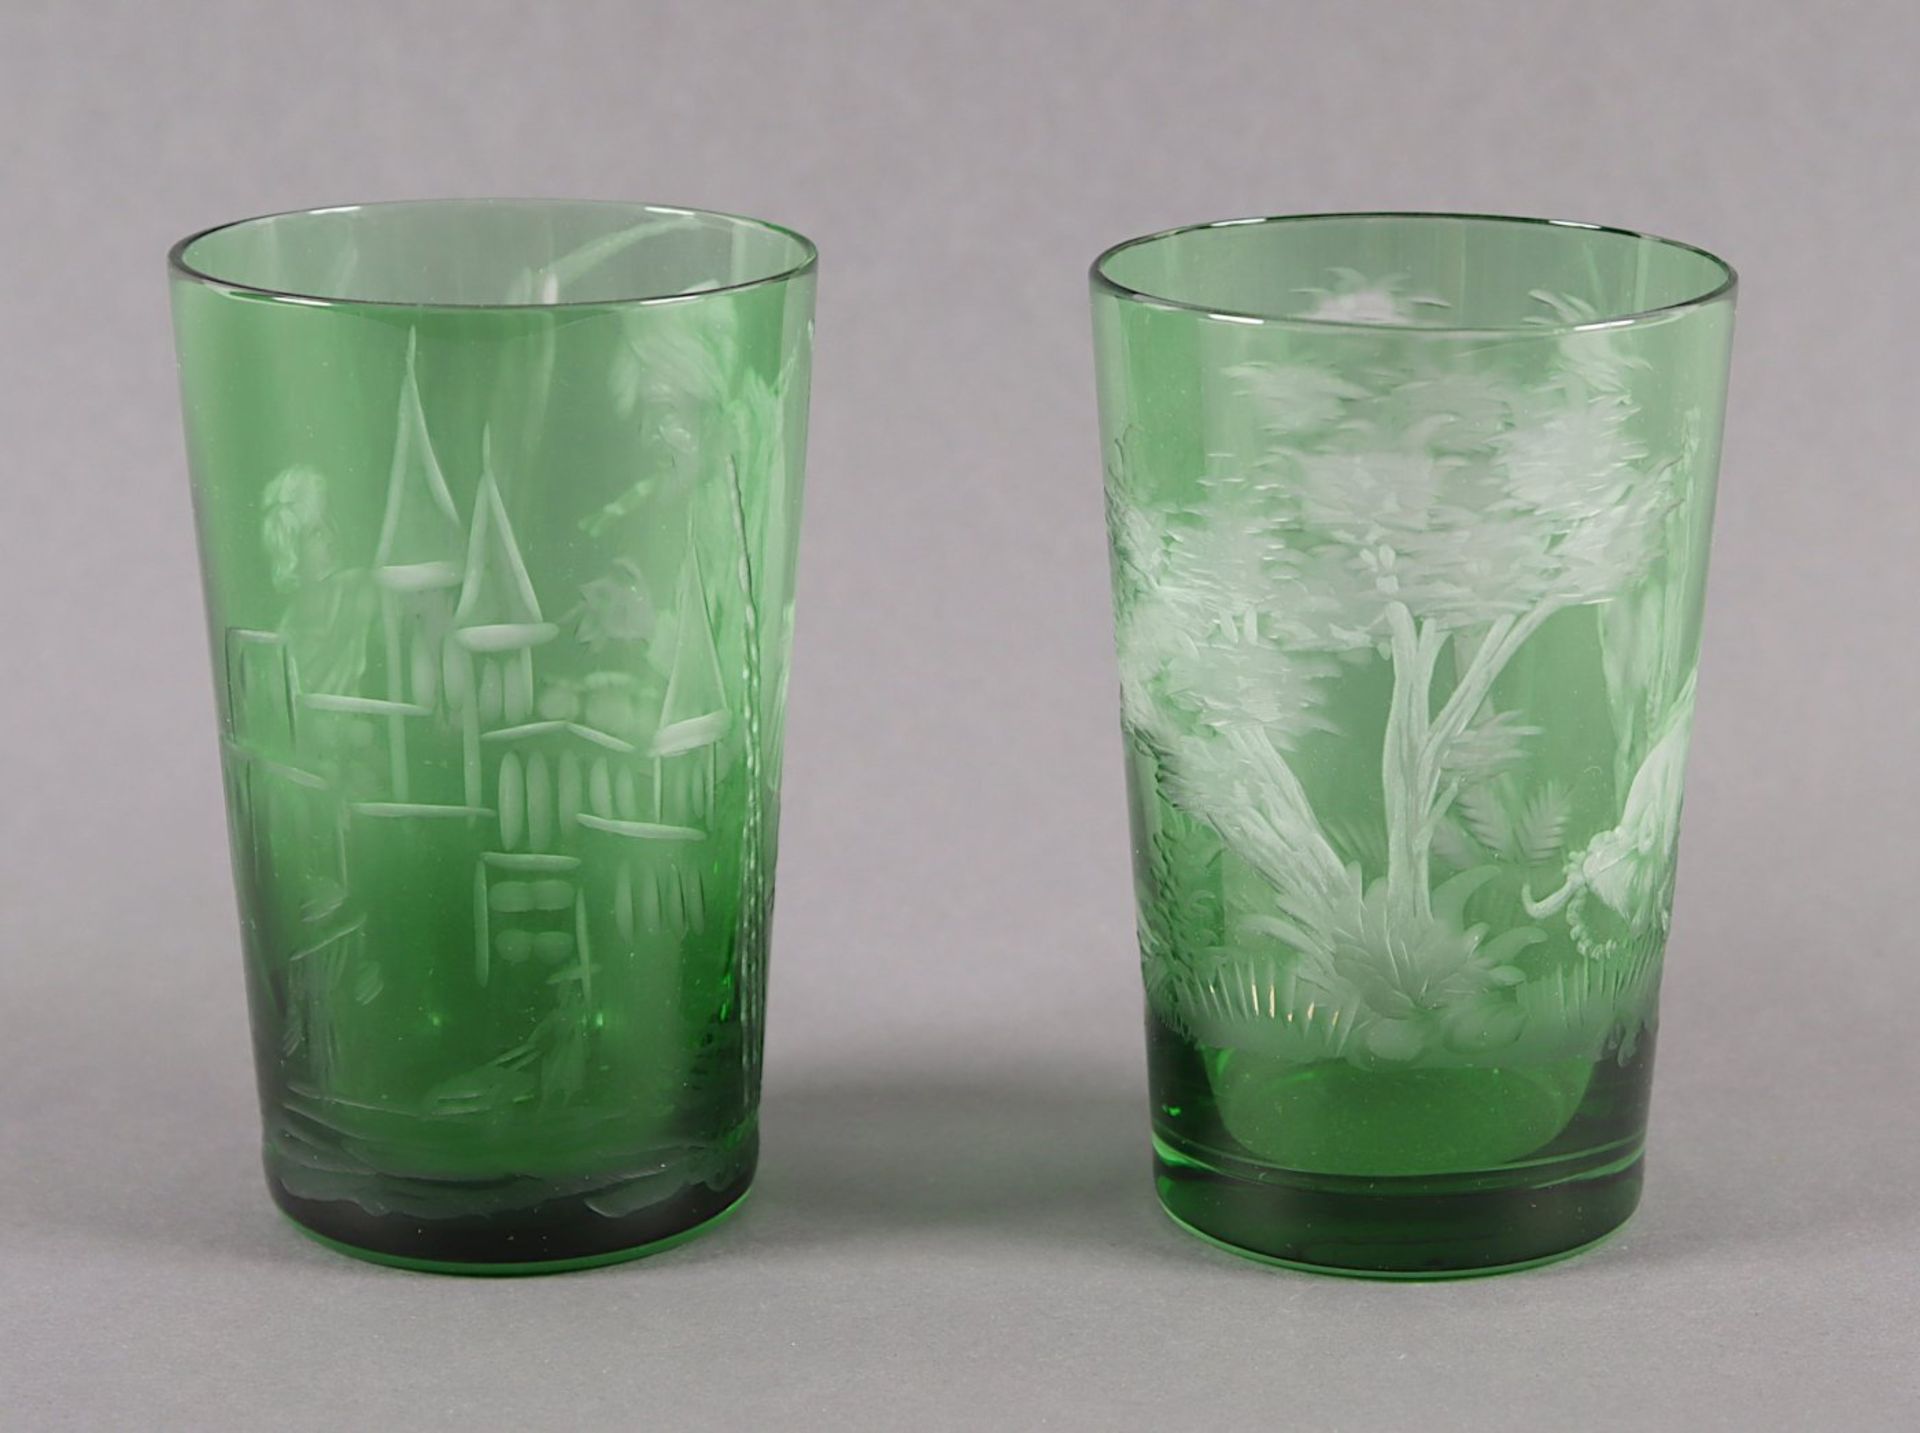 PAAR BECHER, farbloses Glas, grün - Bild 2 aus 2